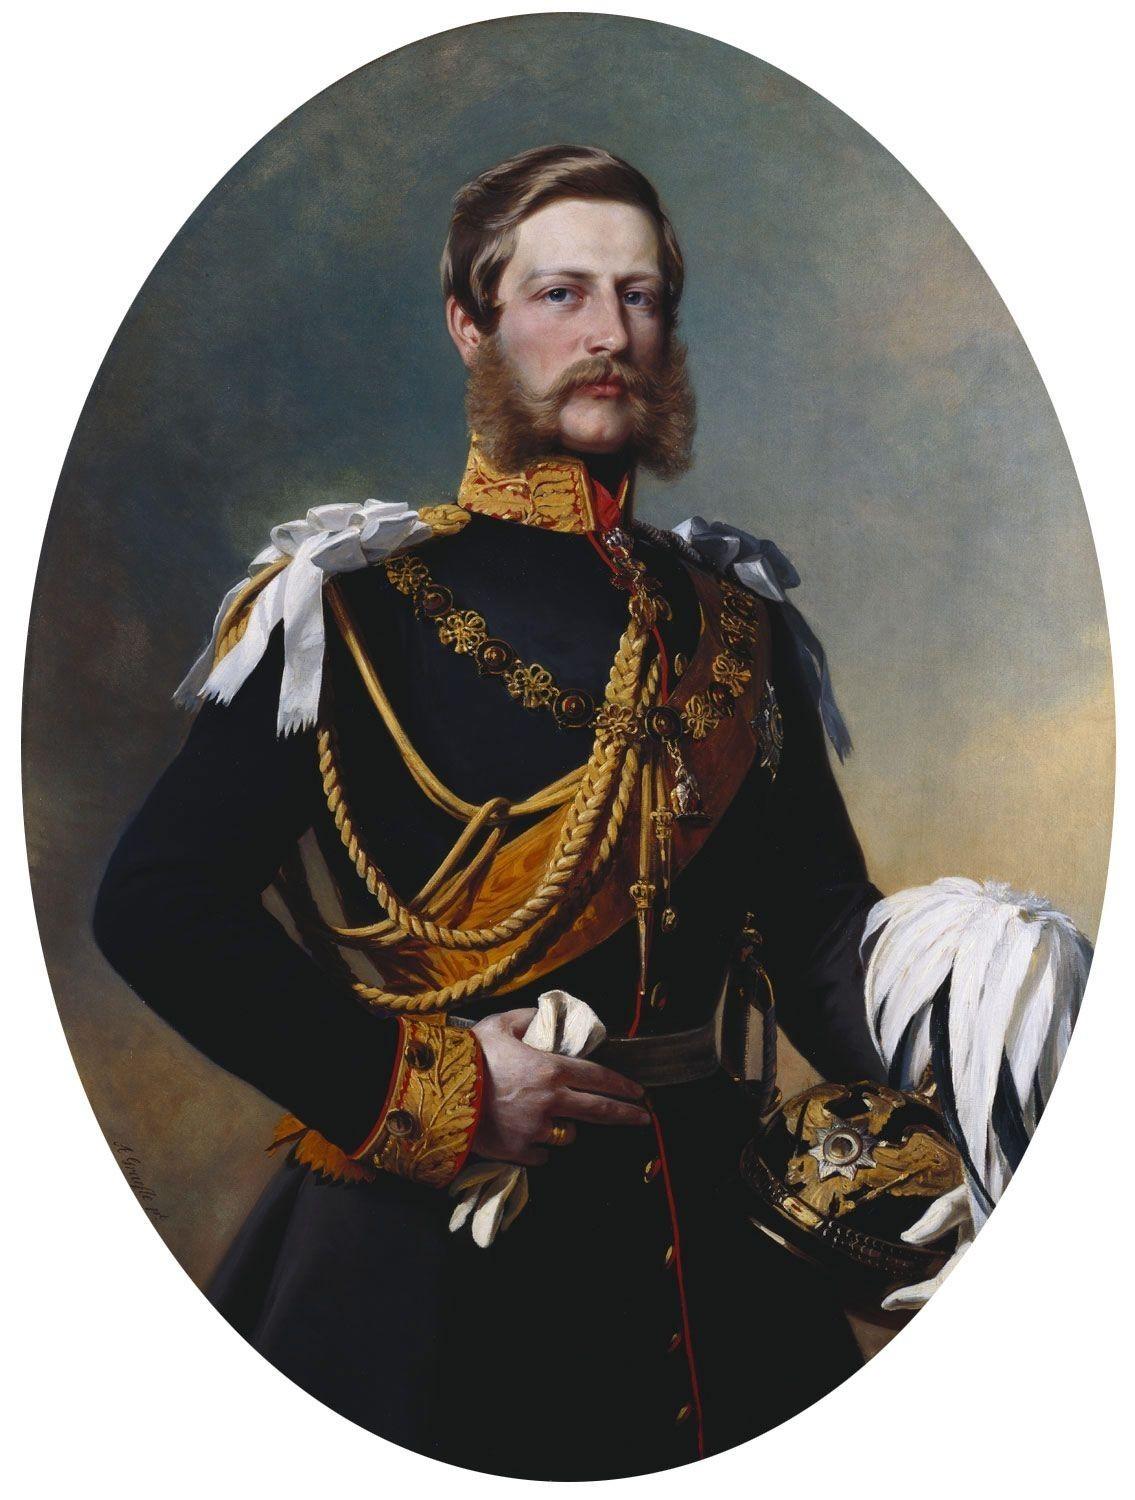 [1] 他是德意志帝国皇帝威廉一世与萨克森-魏玛郡主奥古斯塔唯一的